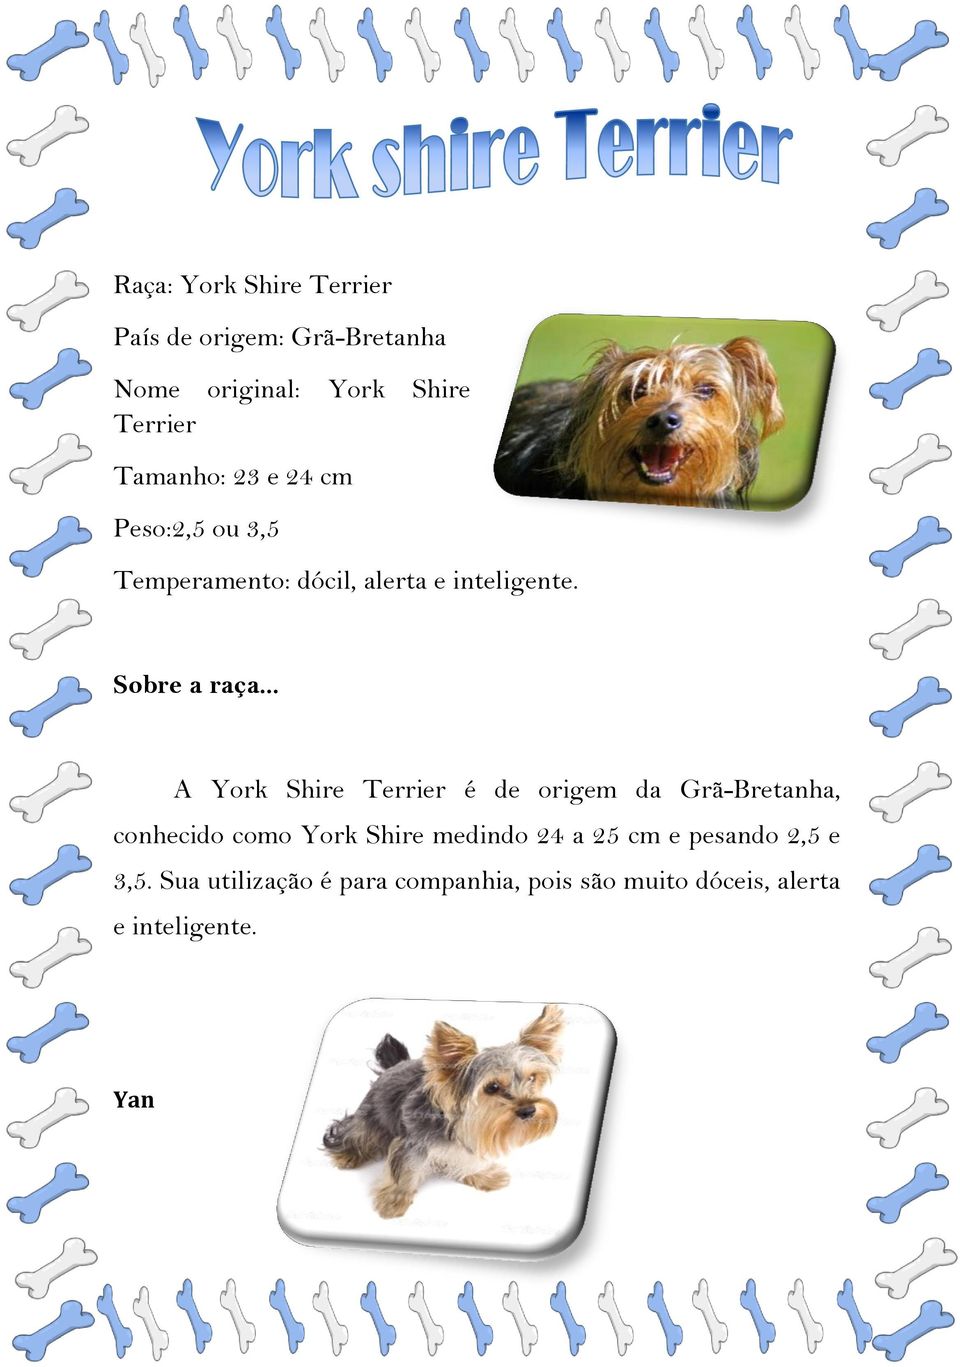 A York Shire Terrier é de origem da Grã-Bretanha, conhecido como York Shire medindo 24 a